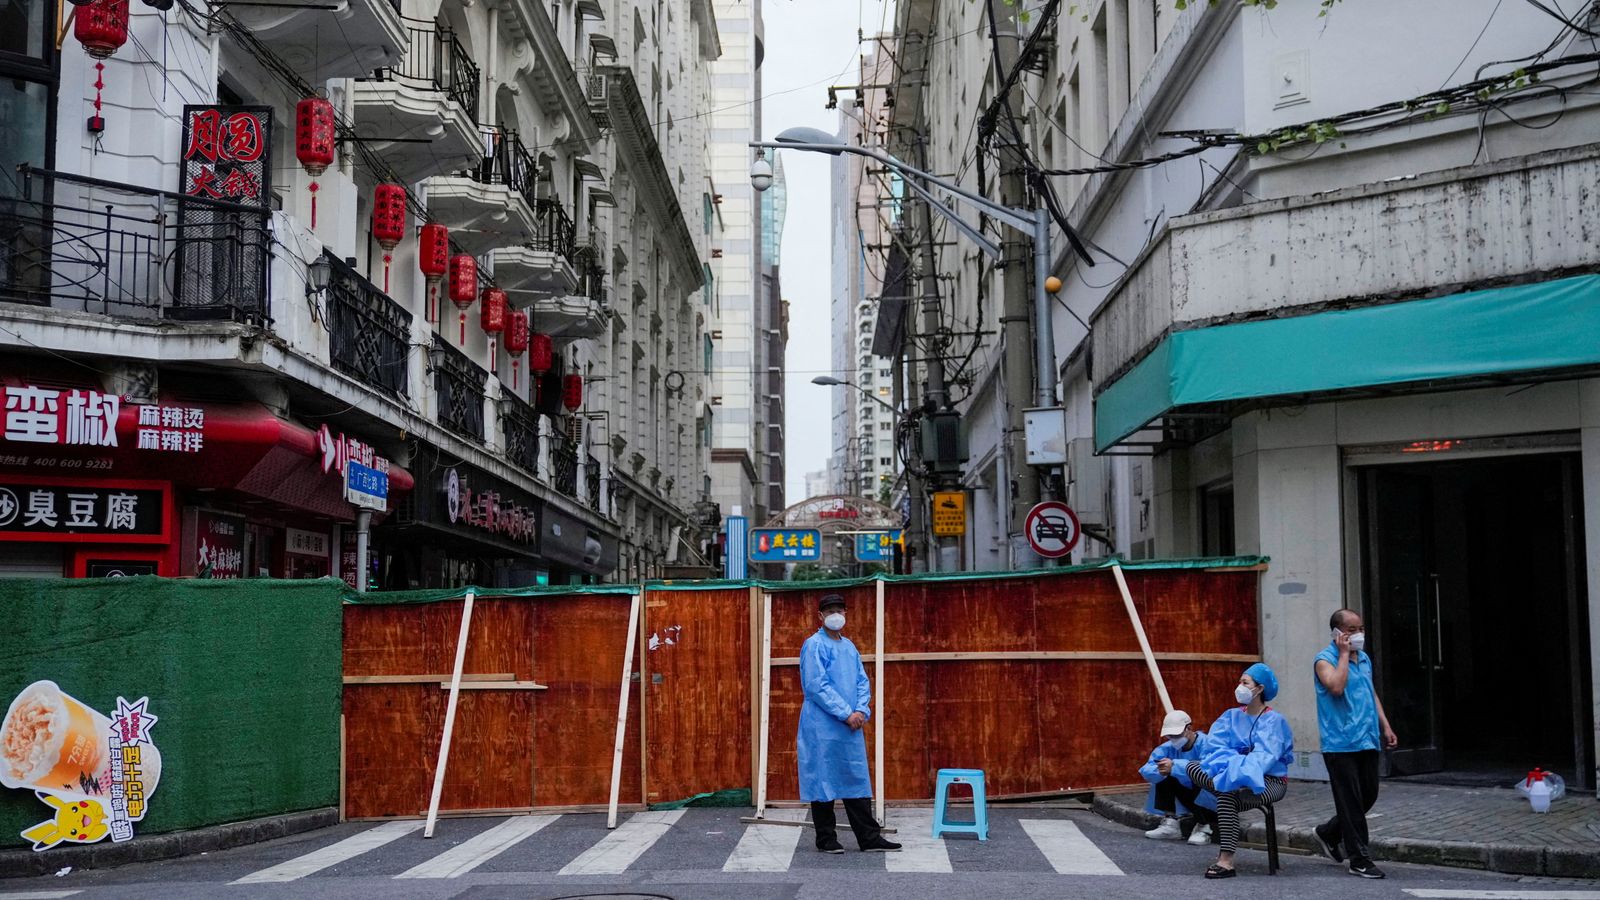 виновата политика Китая по борьбе с коронавирусом, так как экономика сократилась на 2,6% во втором квартале |  Новости бизнеса